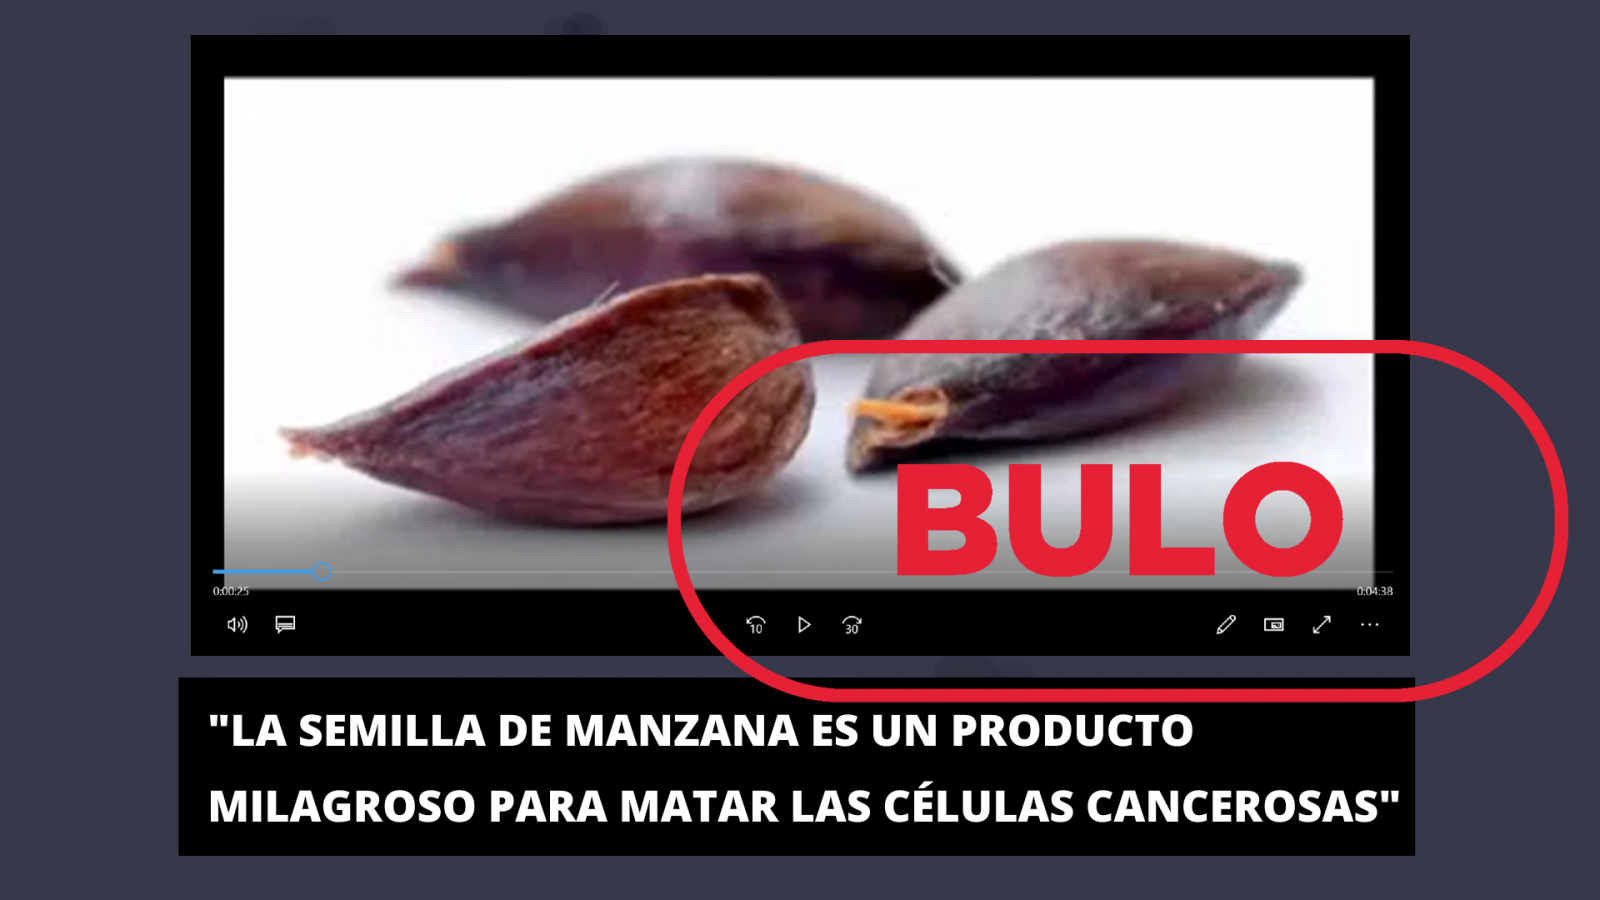 Captura del vídeo que difunde la falsa idea de que las semillas de manzana curan el cáncer, con el sello 'Bulo' en rojo